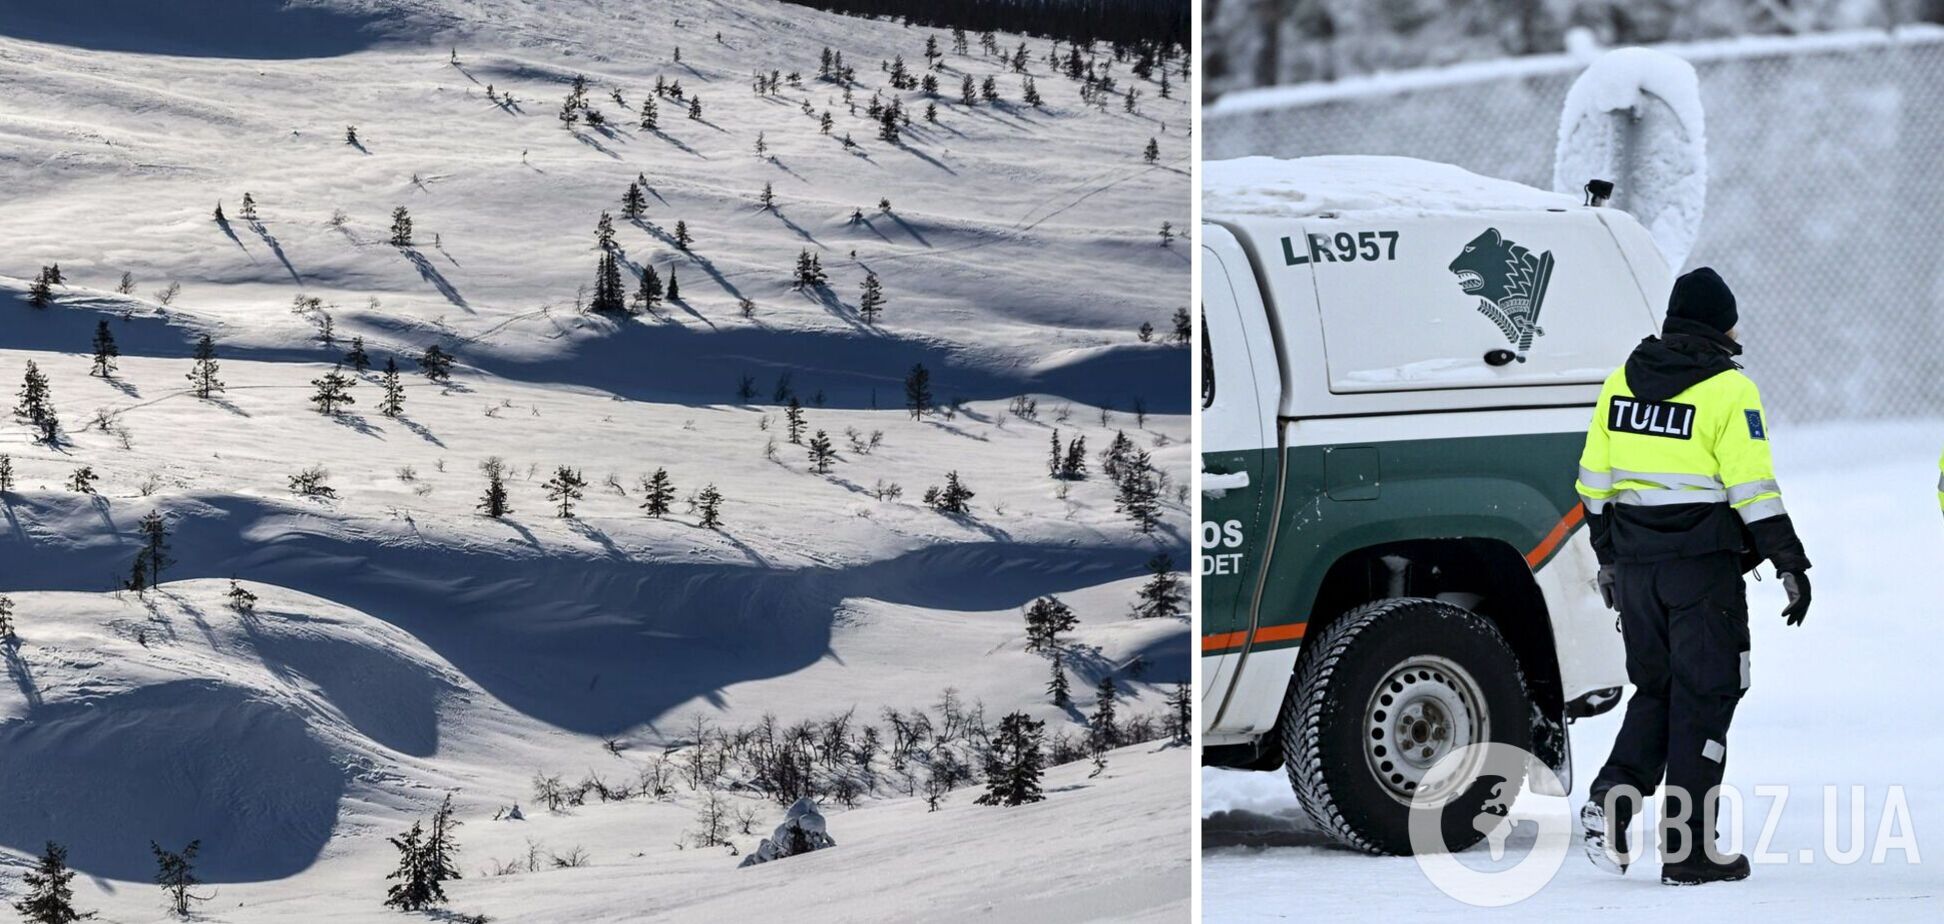 В Финляндии на горнолыжном курорте сошла лавина: мать погибла, ребенок пропал без вести